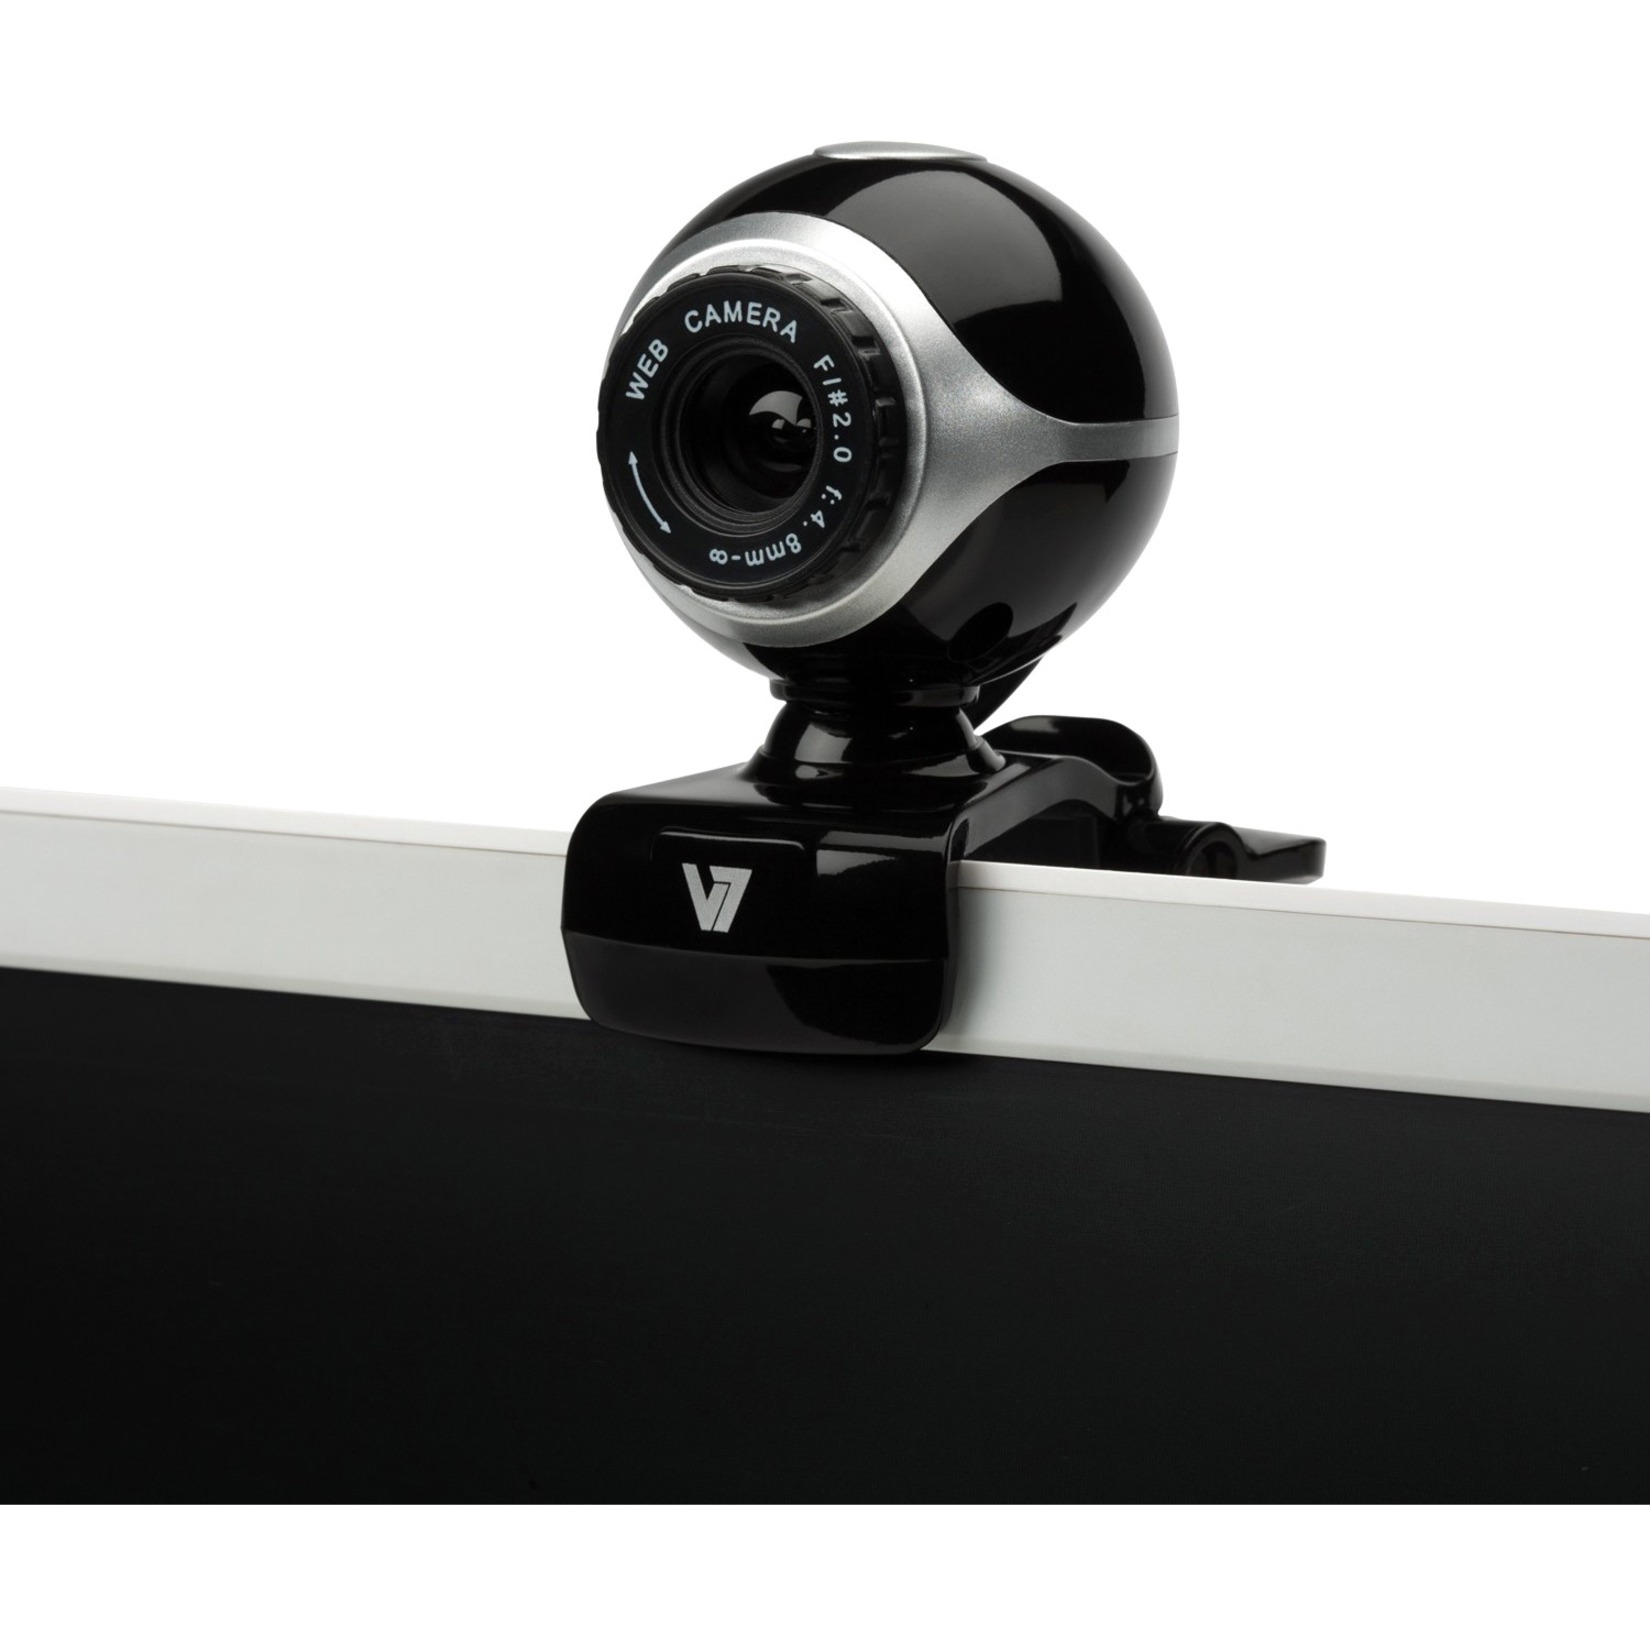 V7 CS0300 Webcam, 0.3 Megapixel, 30 fps, Black, Silver, USB 2.0 - image 2 of 4